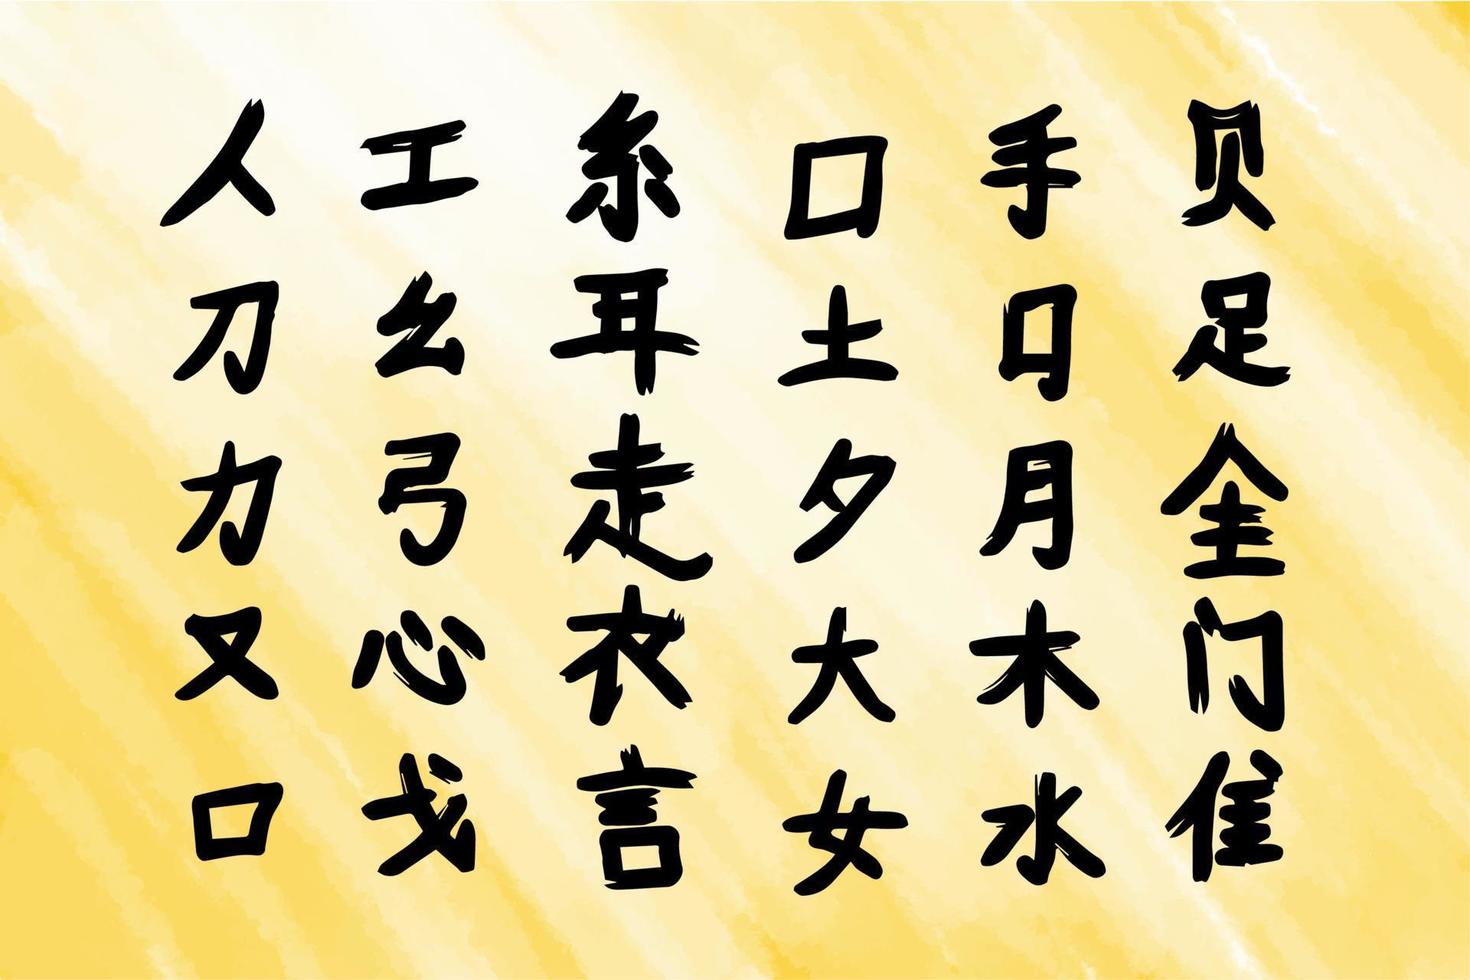 hieroglyfer, japanska tecken ritade med bläckpenseldrag, vektorillustration, akvarellbakgrund vektor